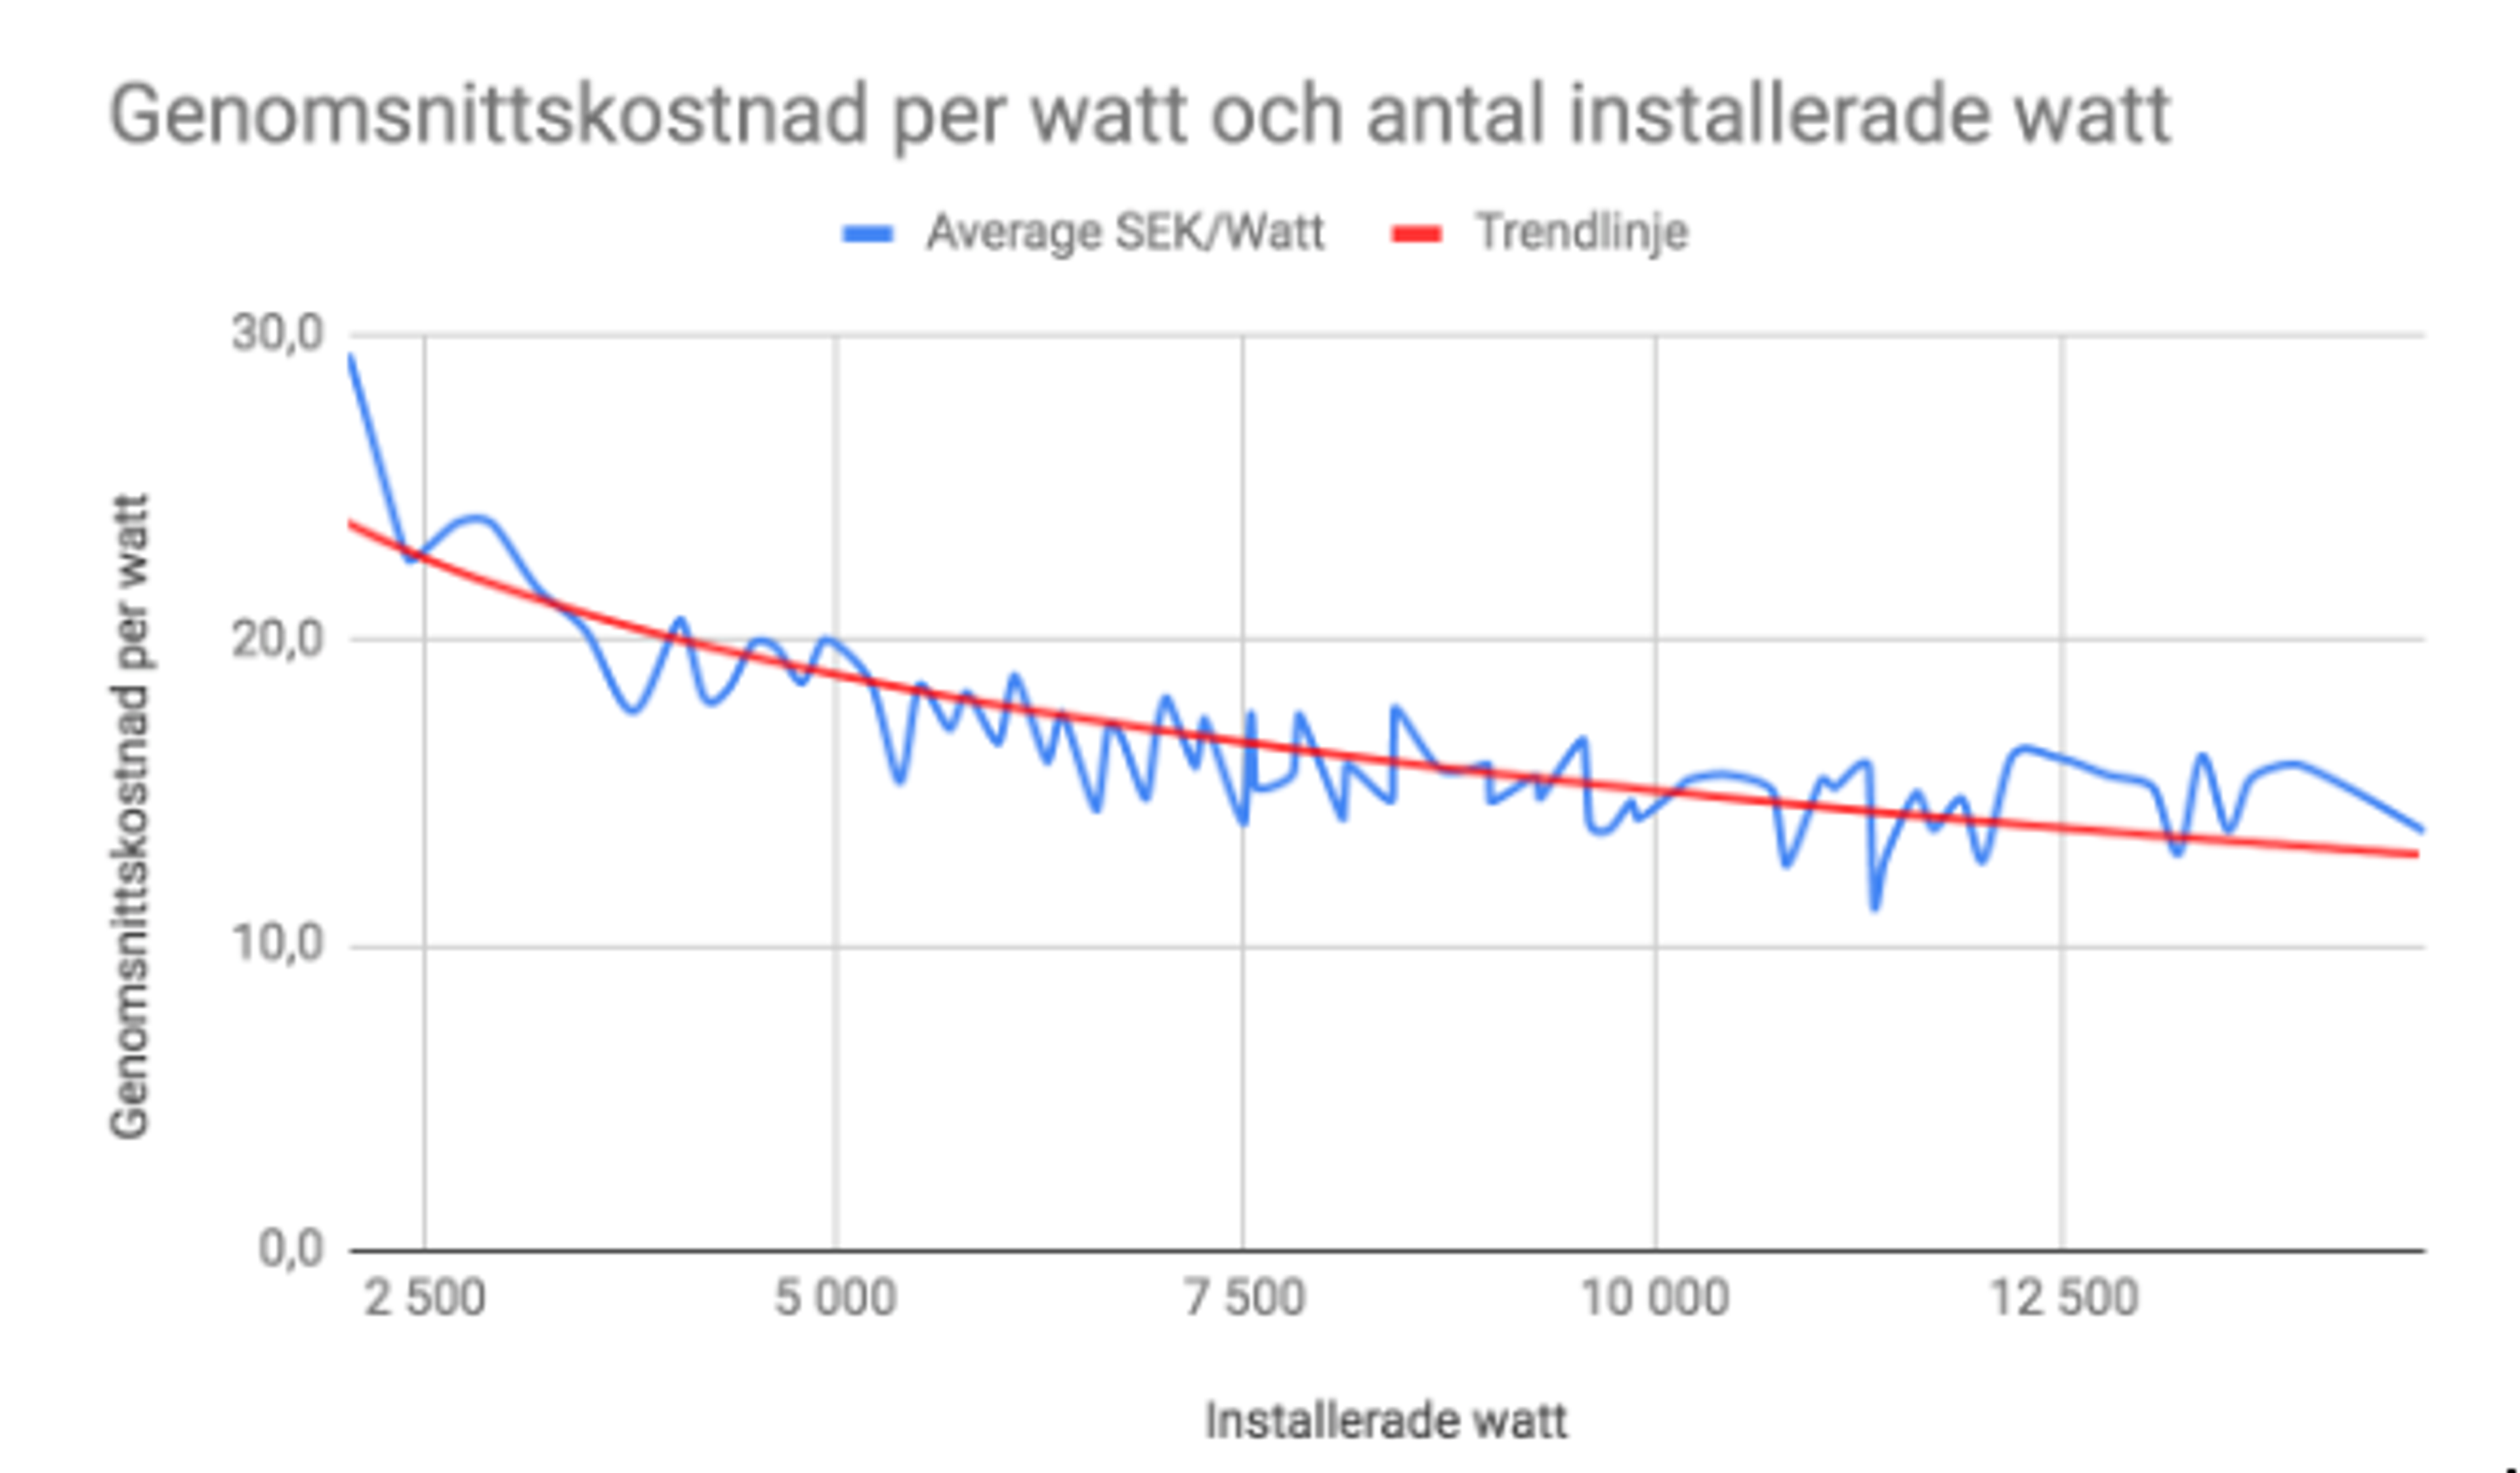 genomsnittskonstad per watt och antal installerade watt